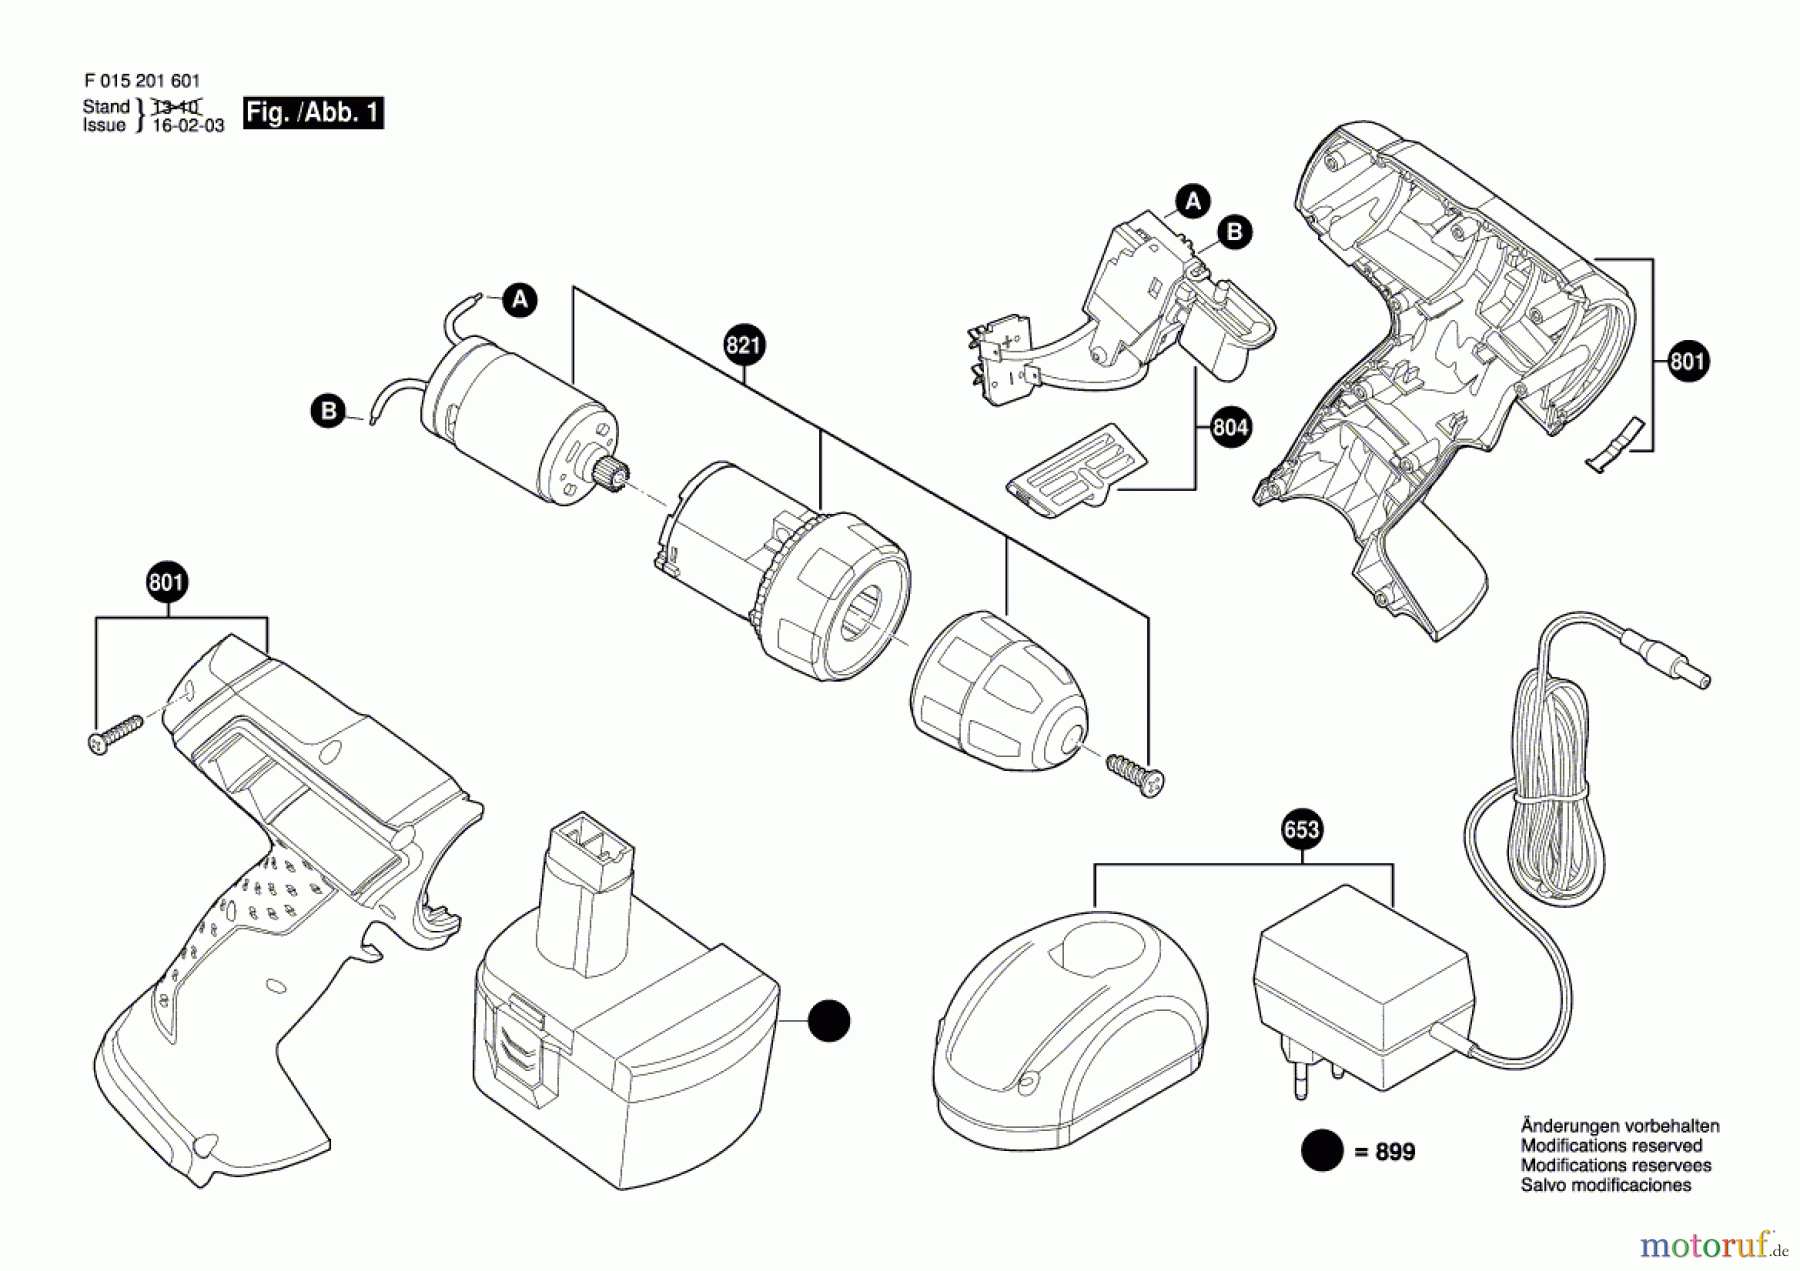  Bosch Akku Werkzeug Akku-Bohrschrauber 2016 Seite 1